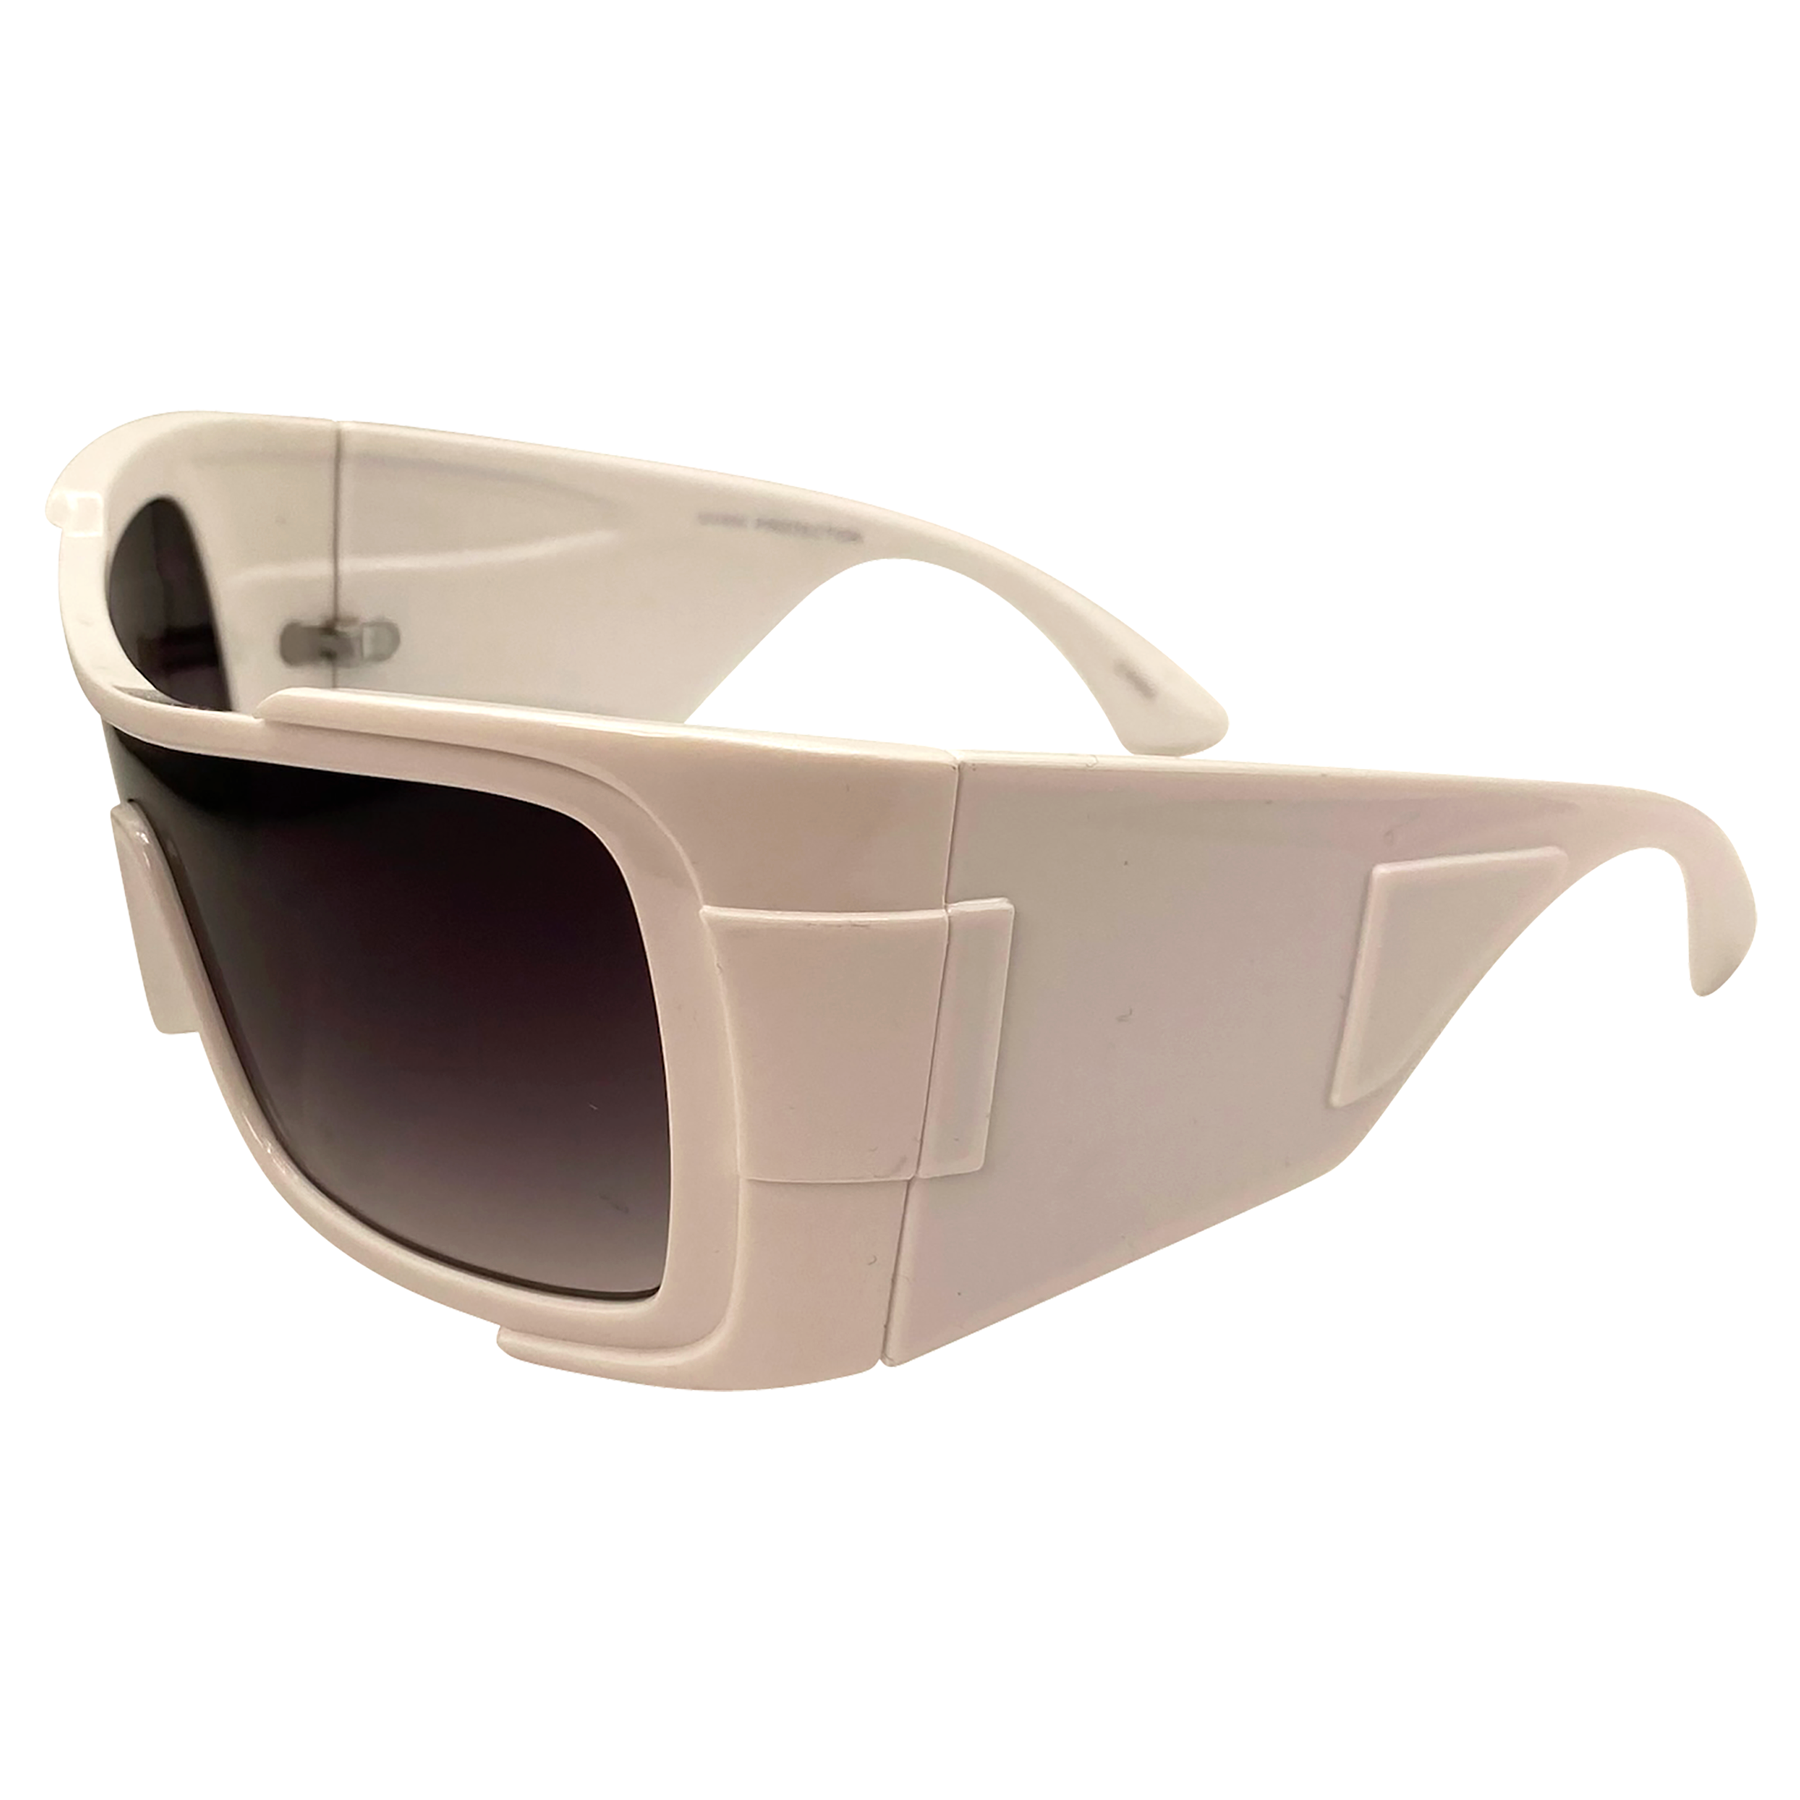 unique sunglasses with a wraparound futuristic shield frame with smoke lens